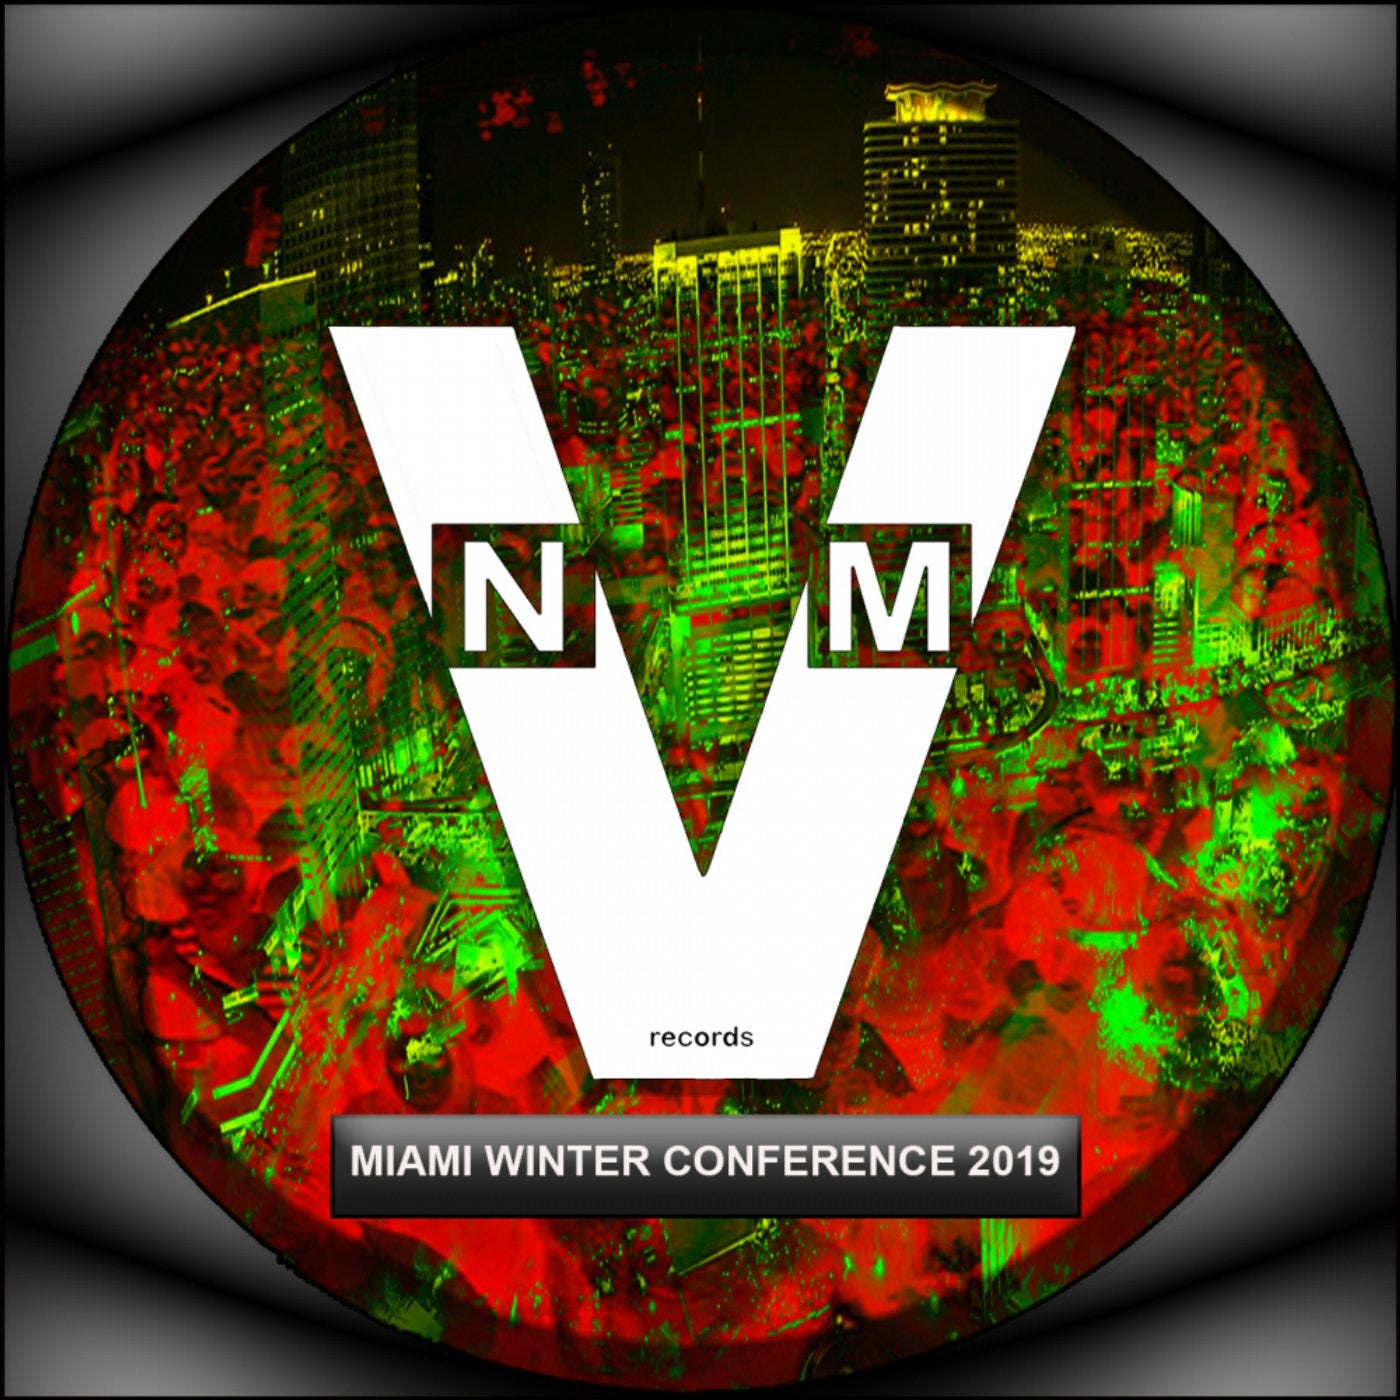 Miami Winter Conference 2019